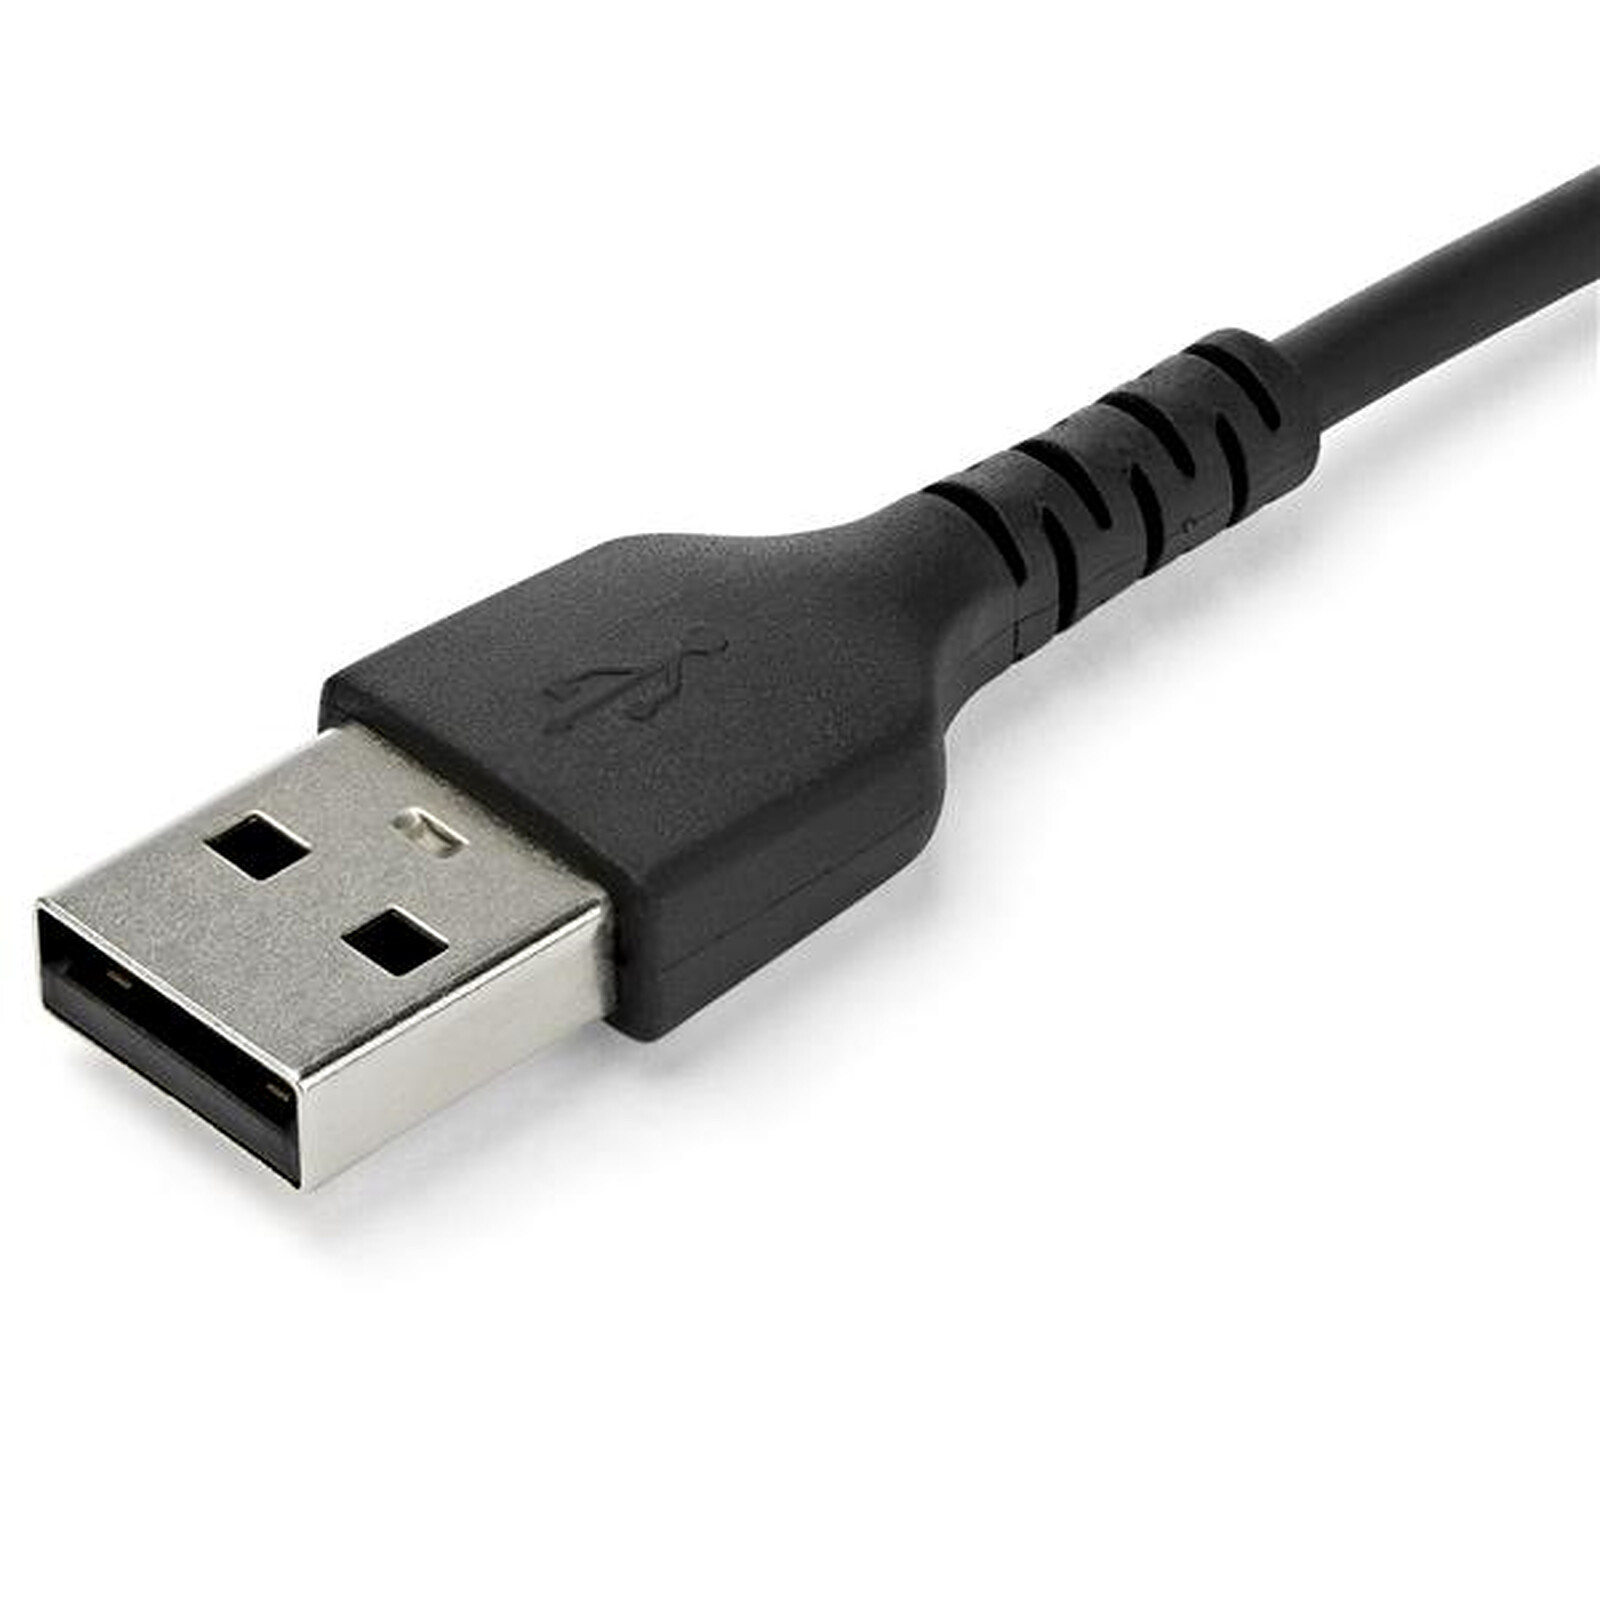 Câble de rallonge USB 3.0 mâle vers femelle M/F de 10 pi avec